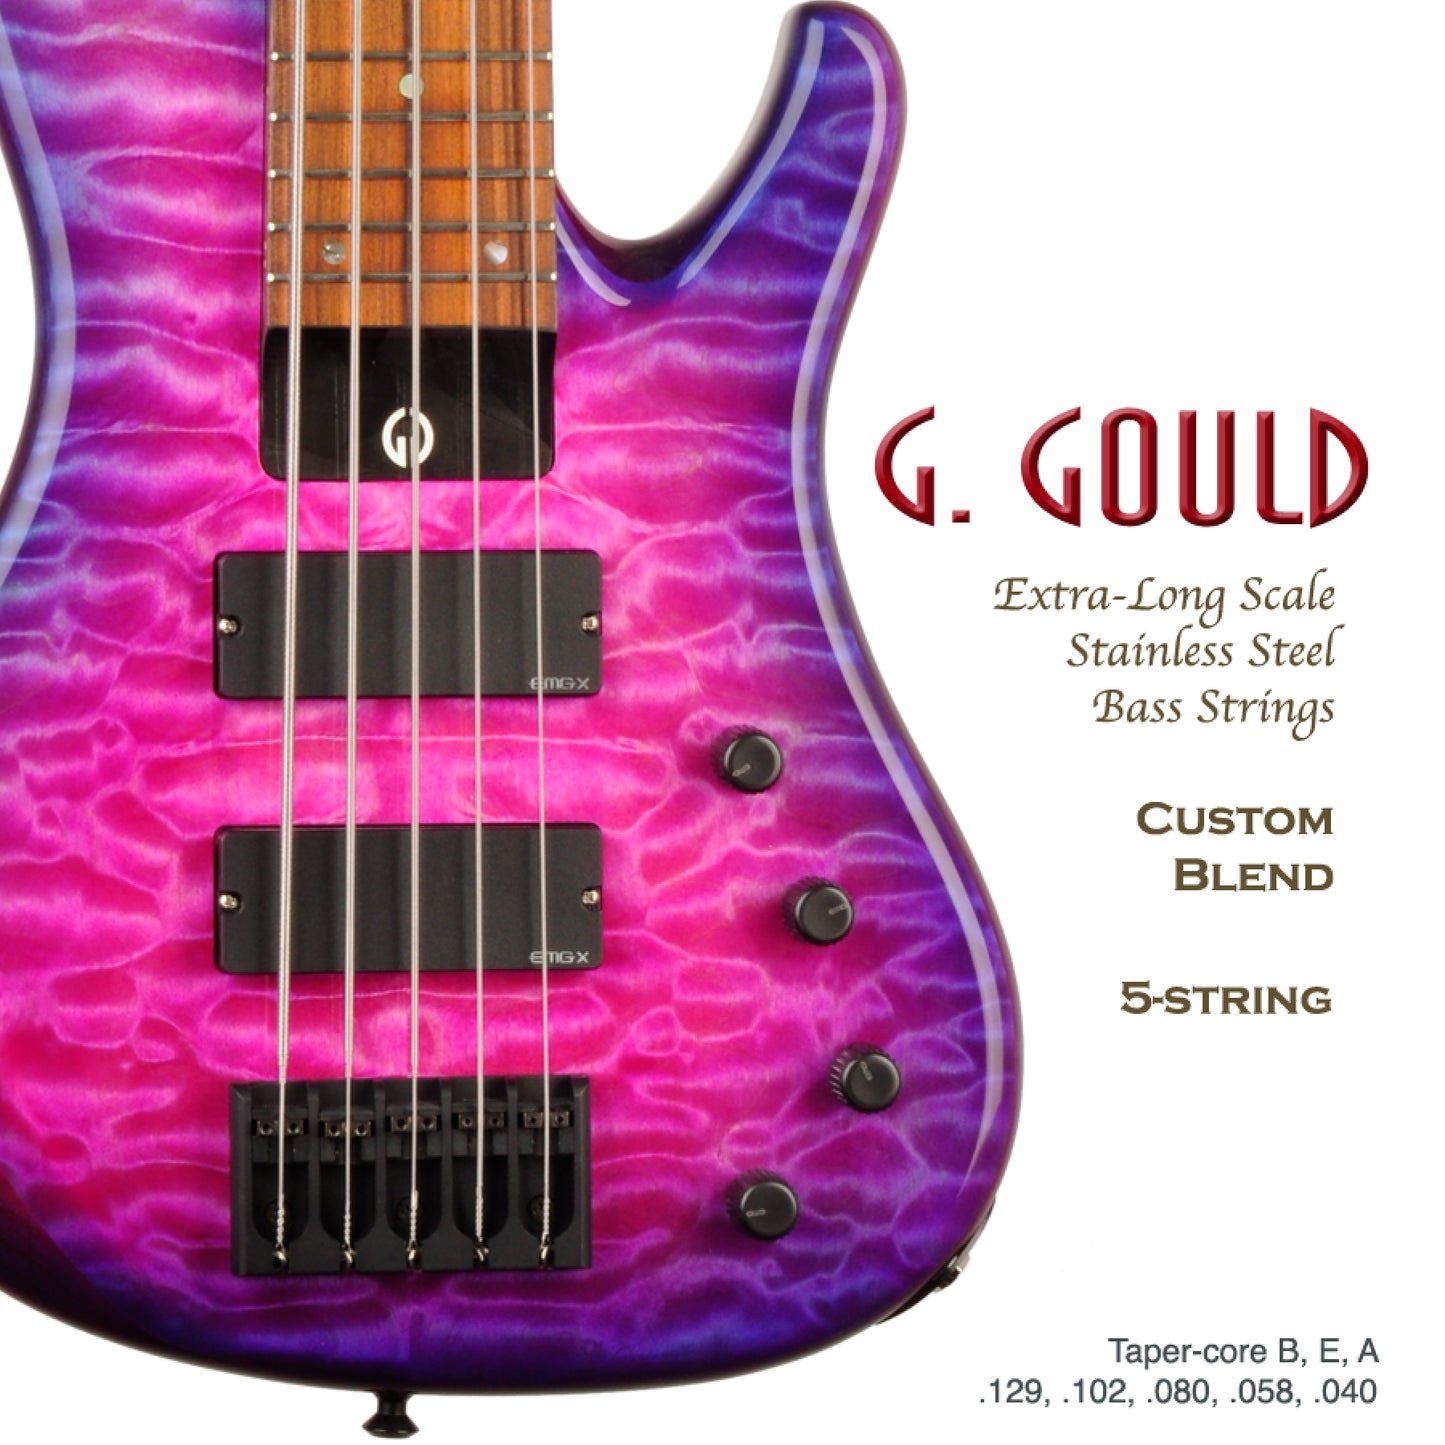 G. Gould Custom Blend Bass Strings, 5-String